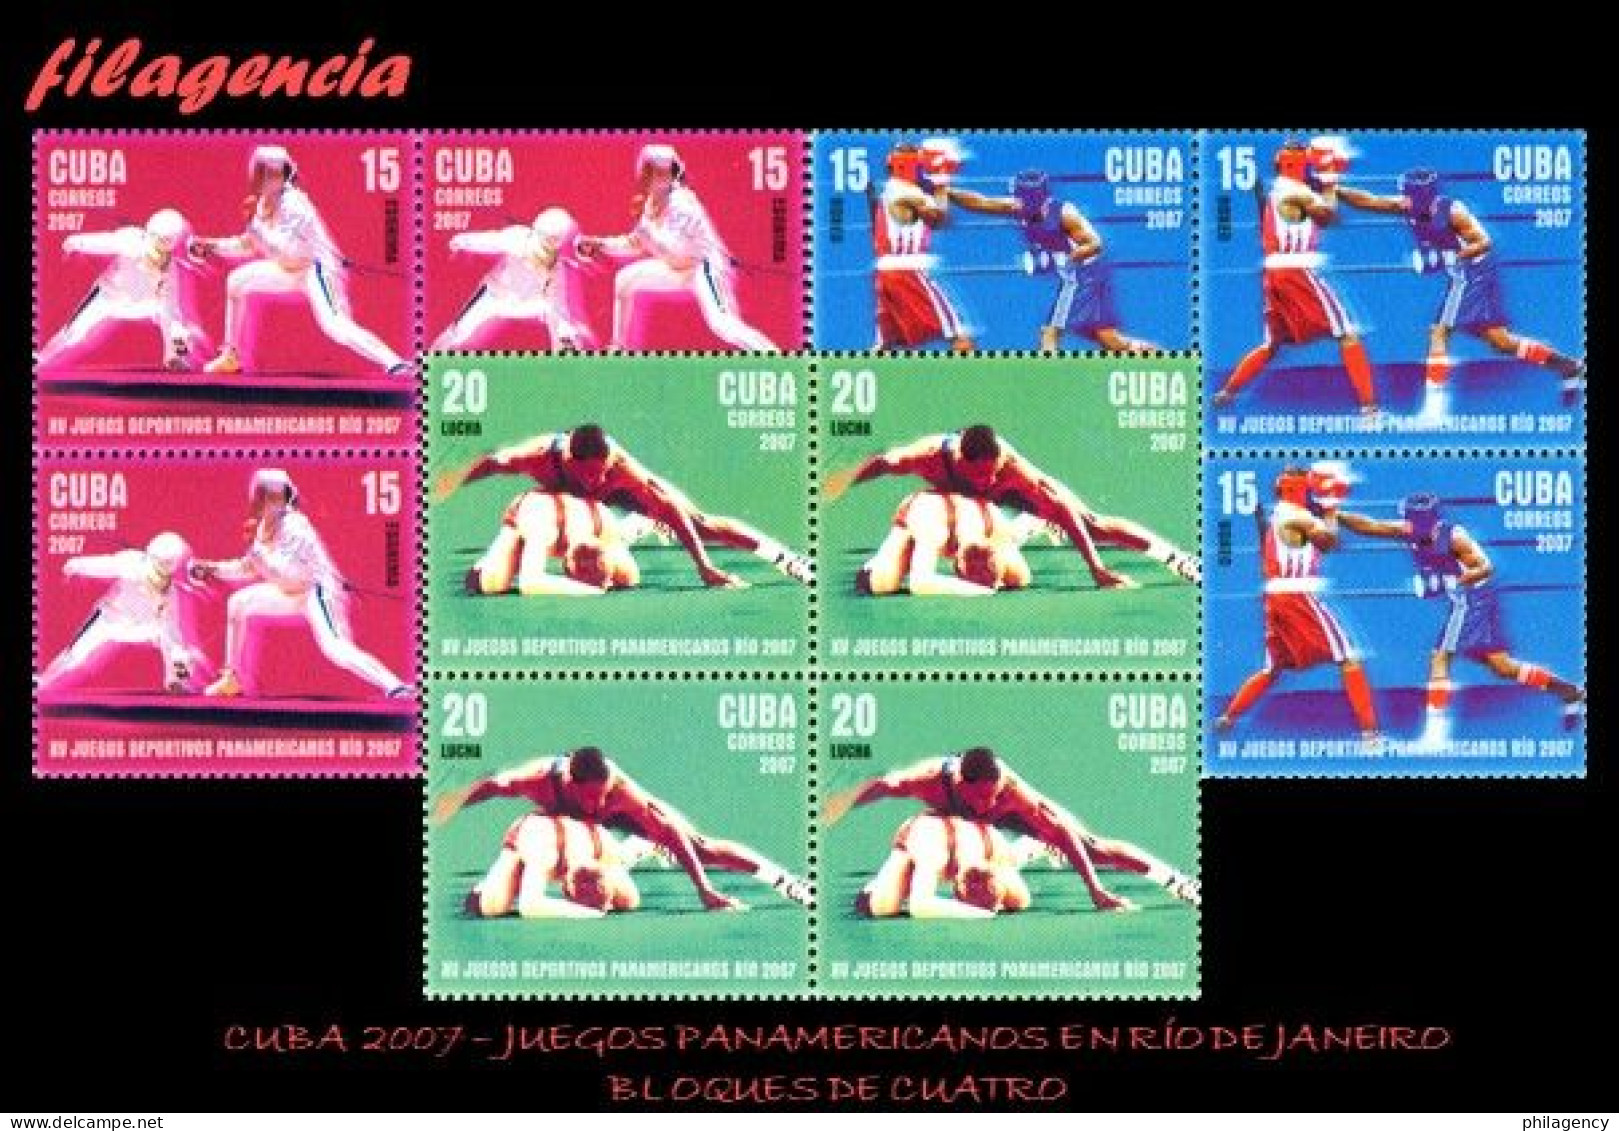 CUBA. BLOQUES DE CUATRO. 2007-21 JUEGOS PANAMERICANOS EN RÍO DE JANEIRO - Nuovi